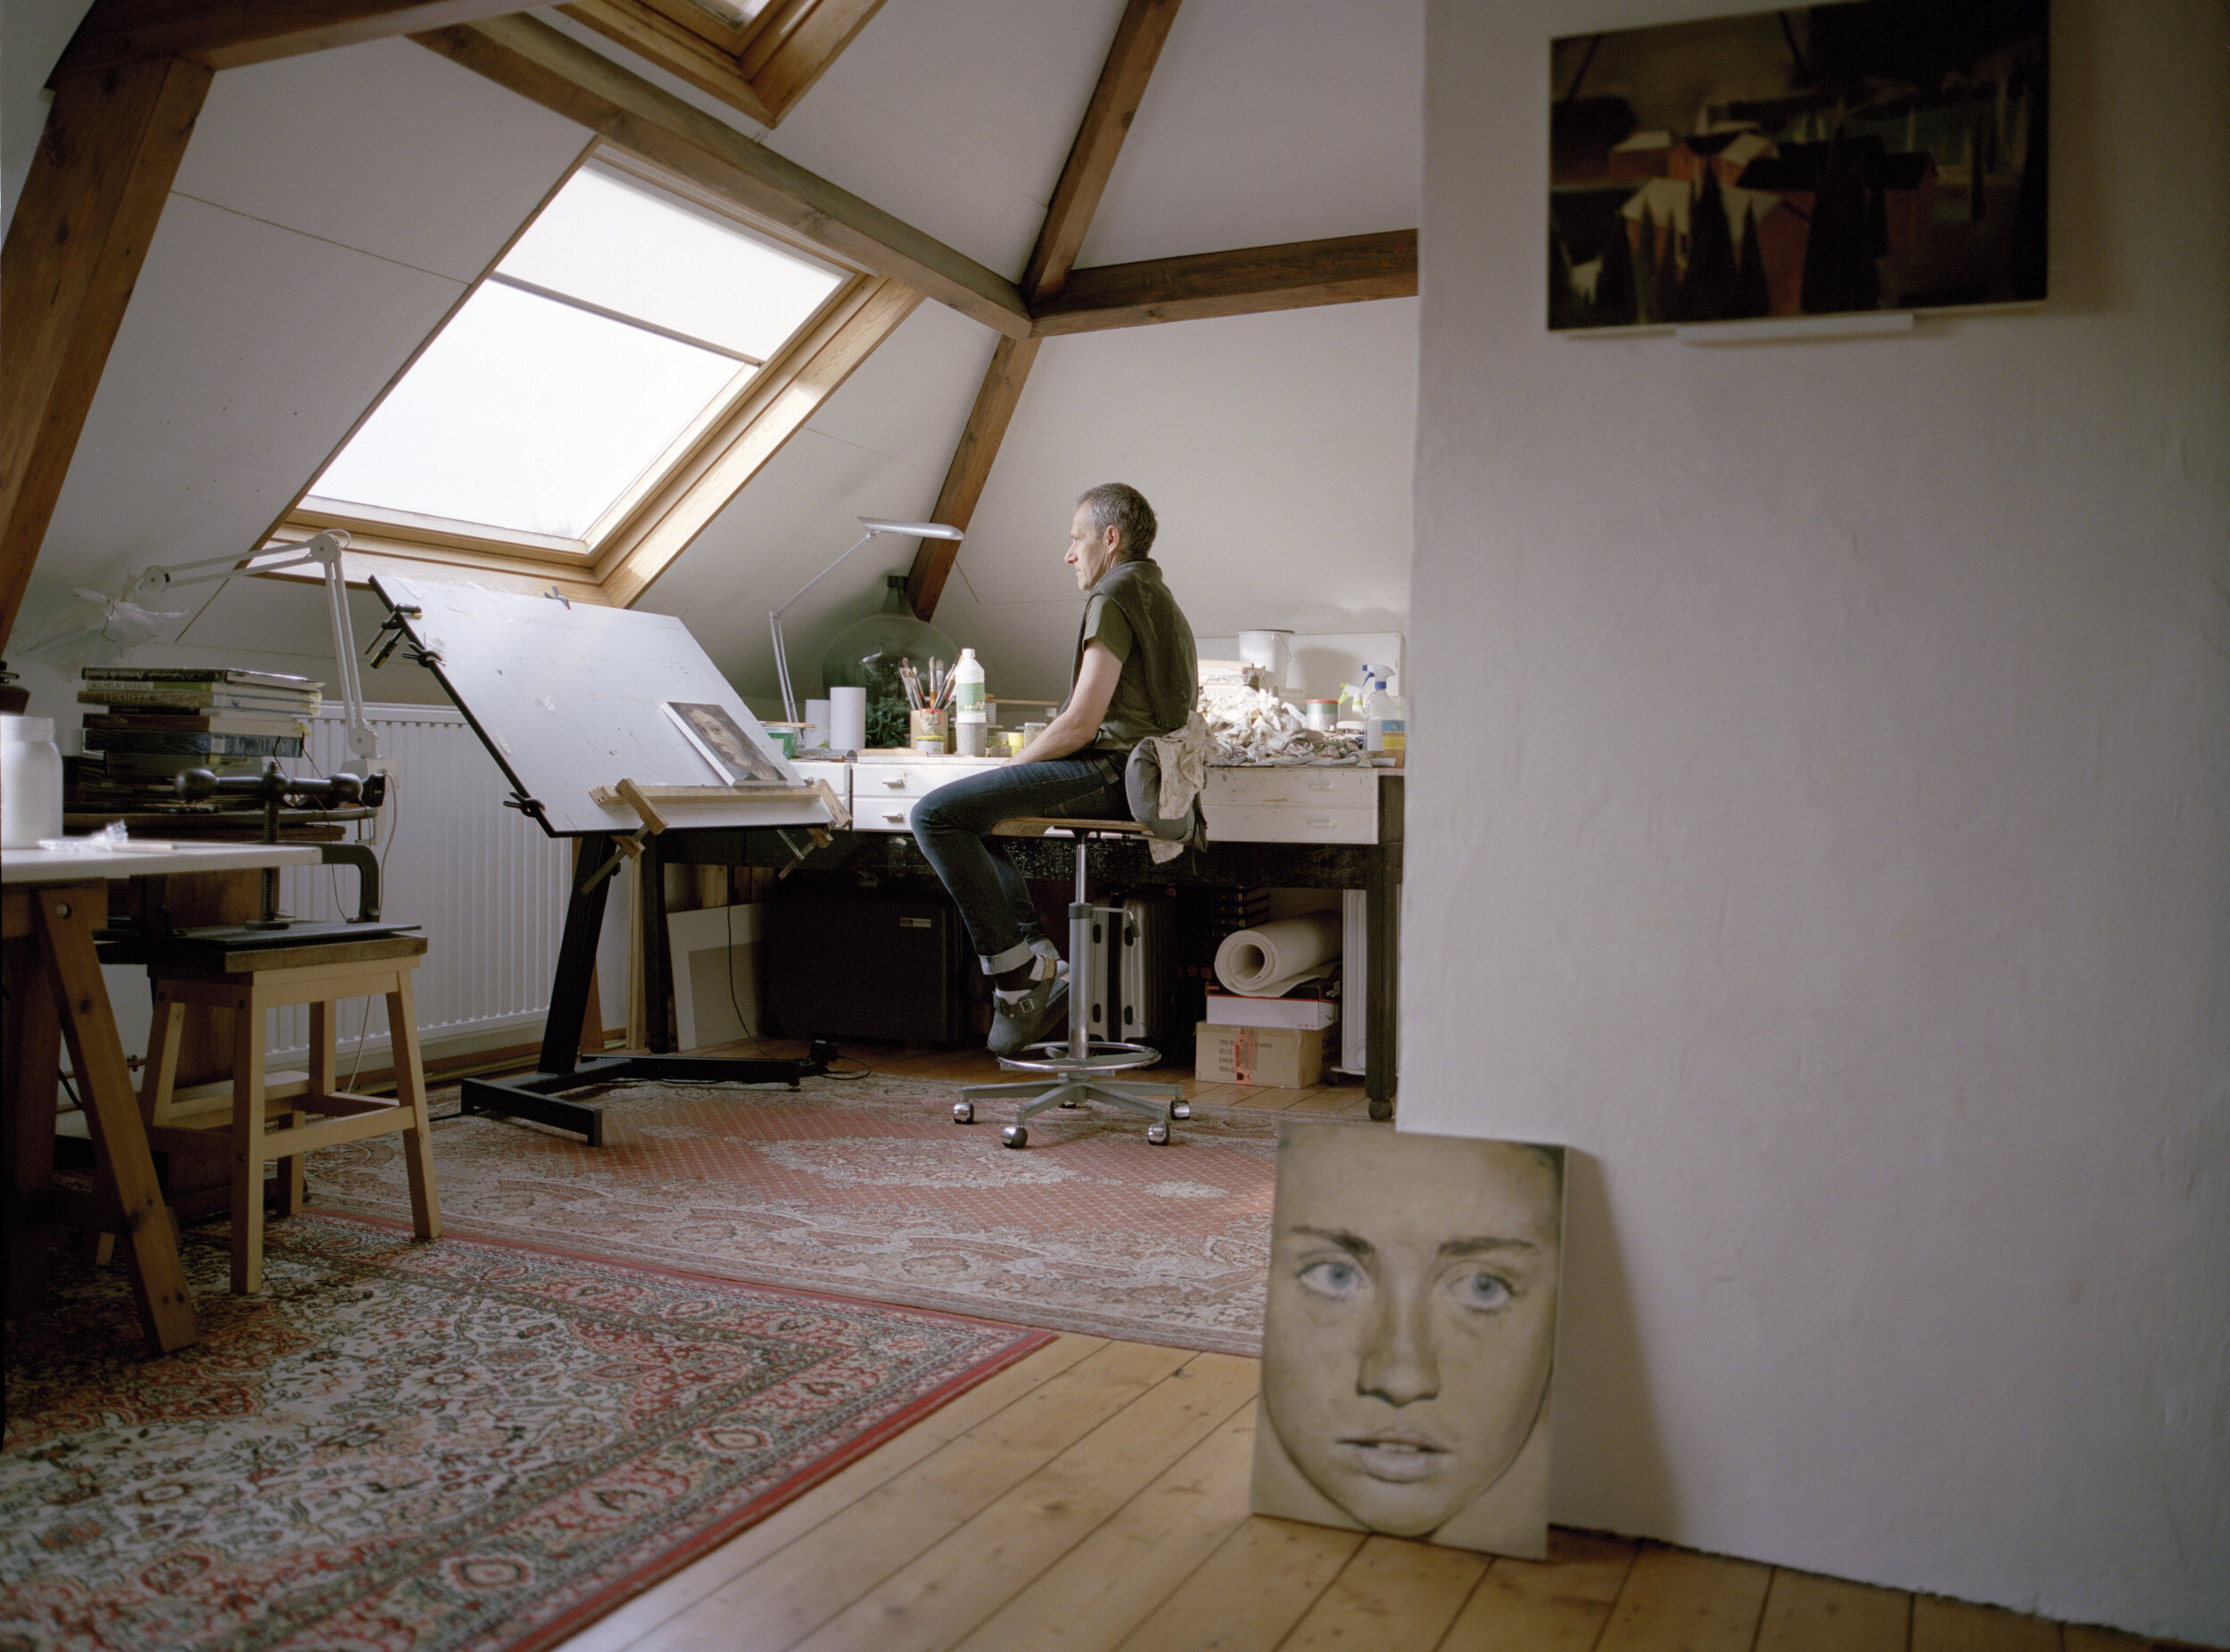  Jan de Maesschalck in his atelier (with Hillary) 